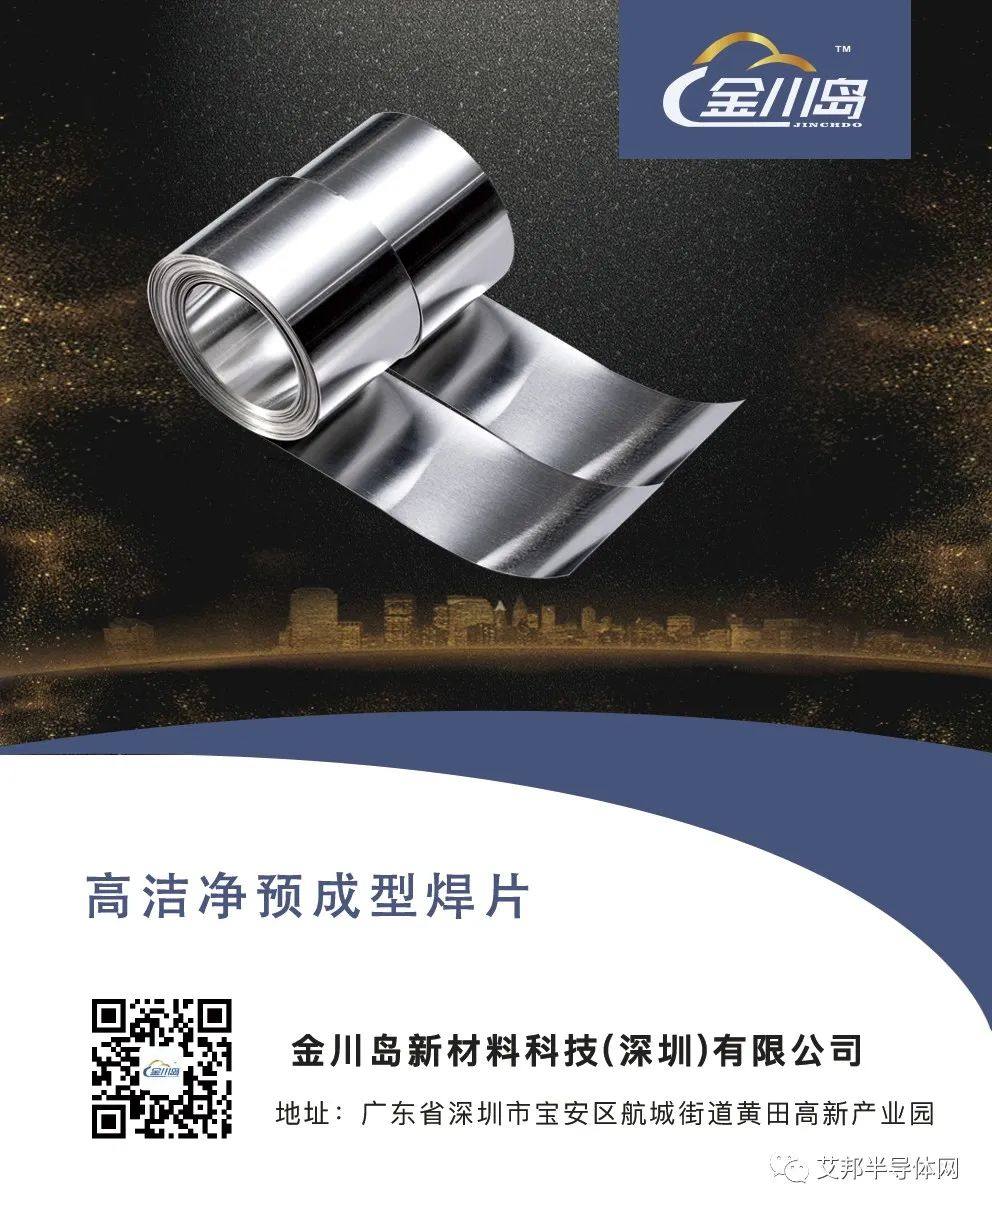 高洁净预成型焊料在IGBT中的应用